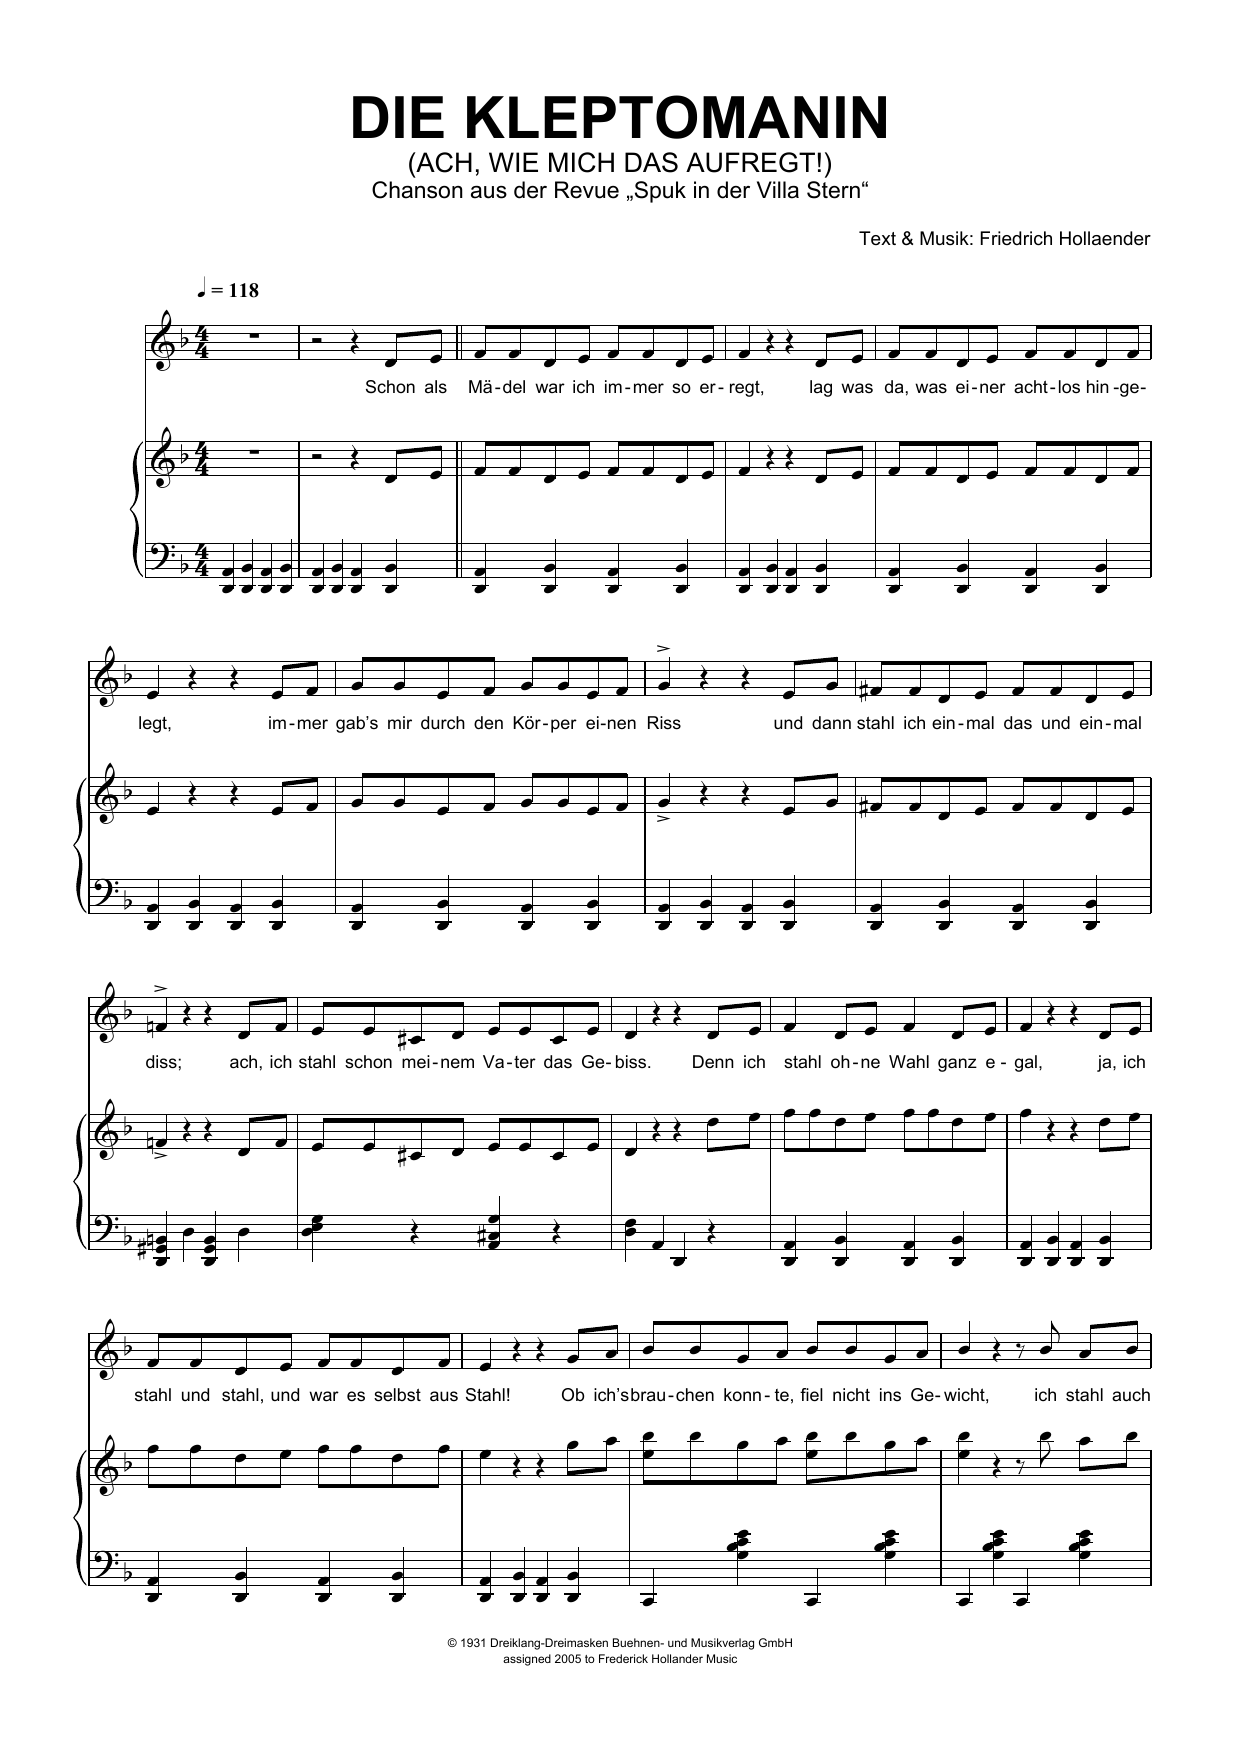 Friedrich Holländer Die Kleptomanin (Ach, Wie Mich Das Aufregt!) Sheet Music Notes & Chords for Piano & Vocal - Download or Print PDF